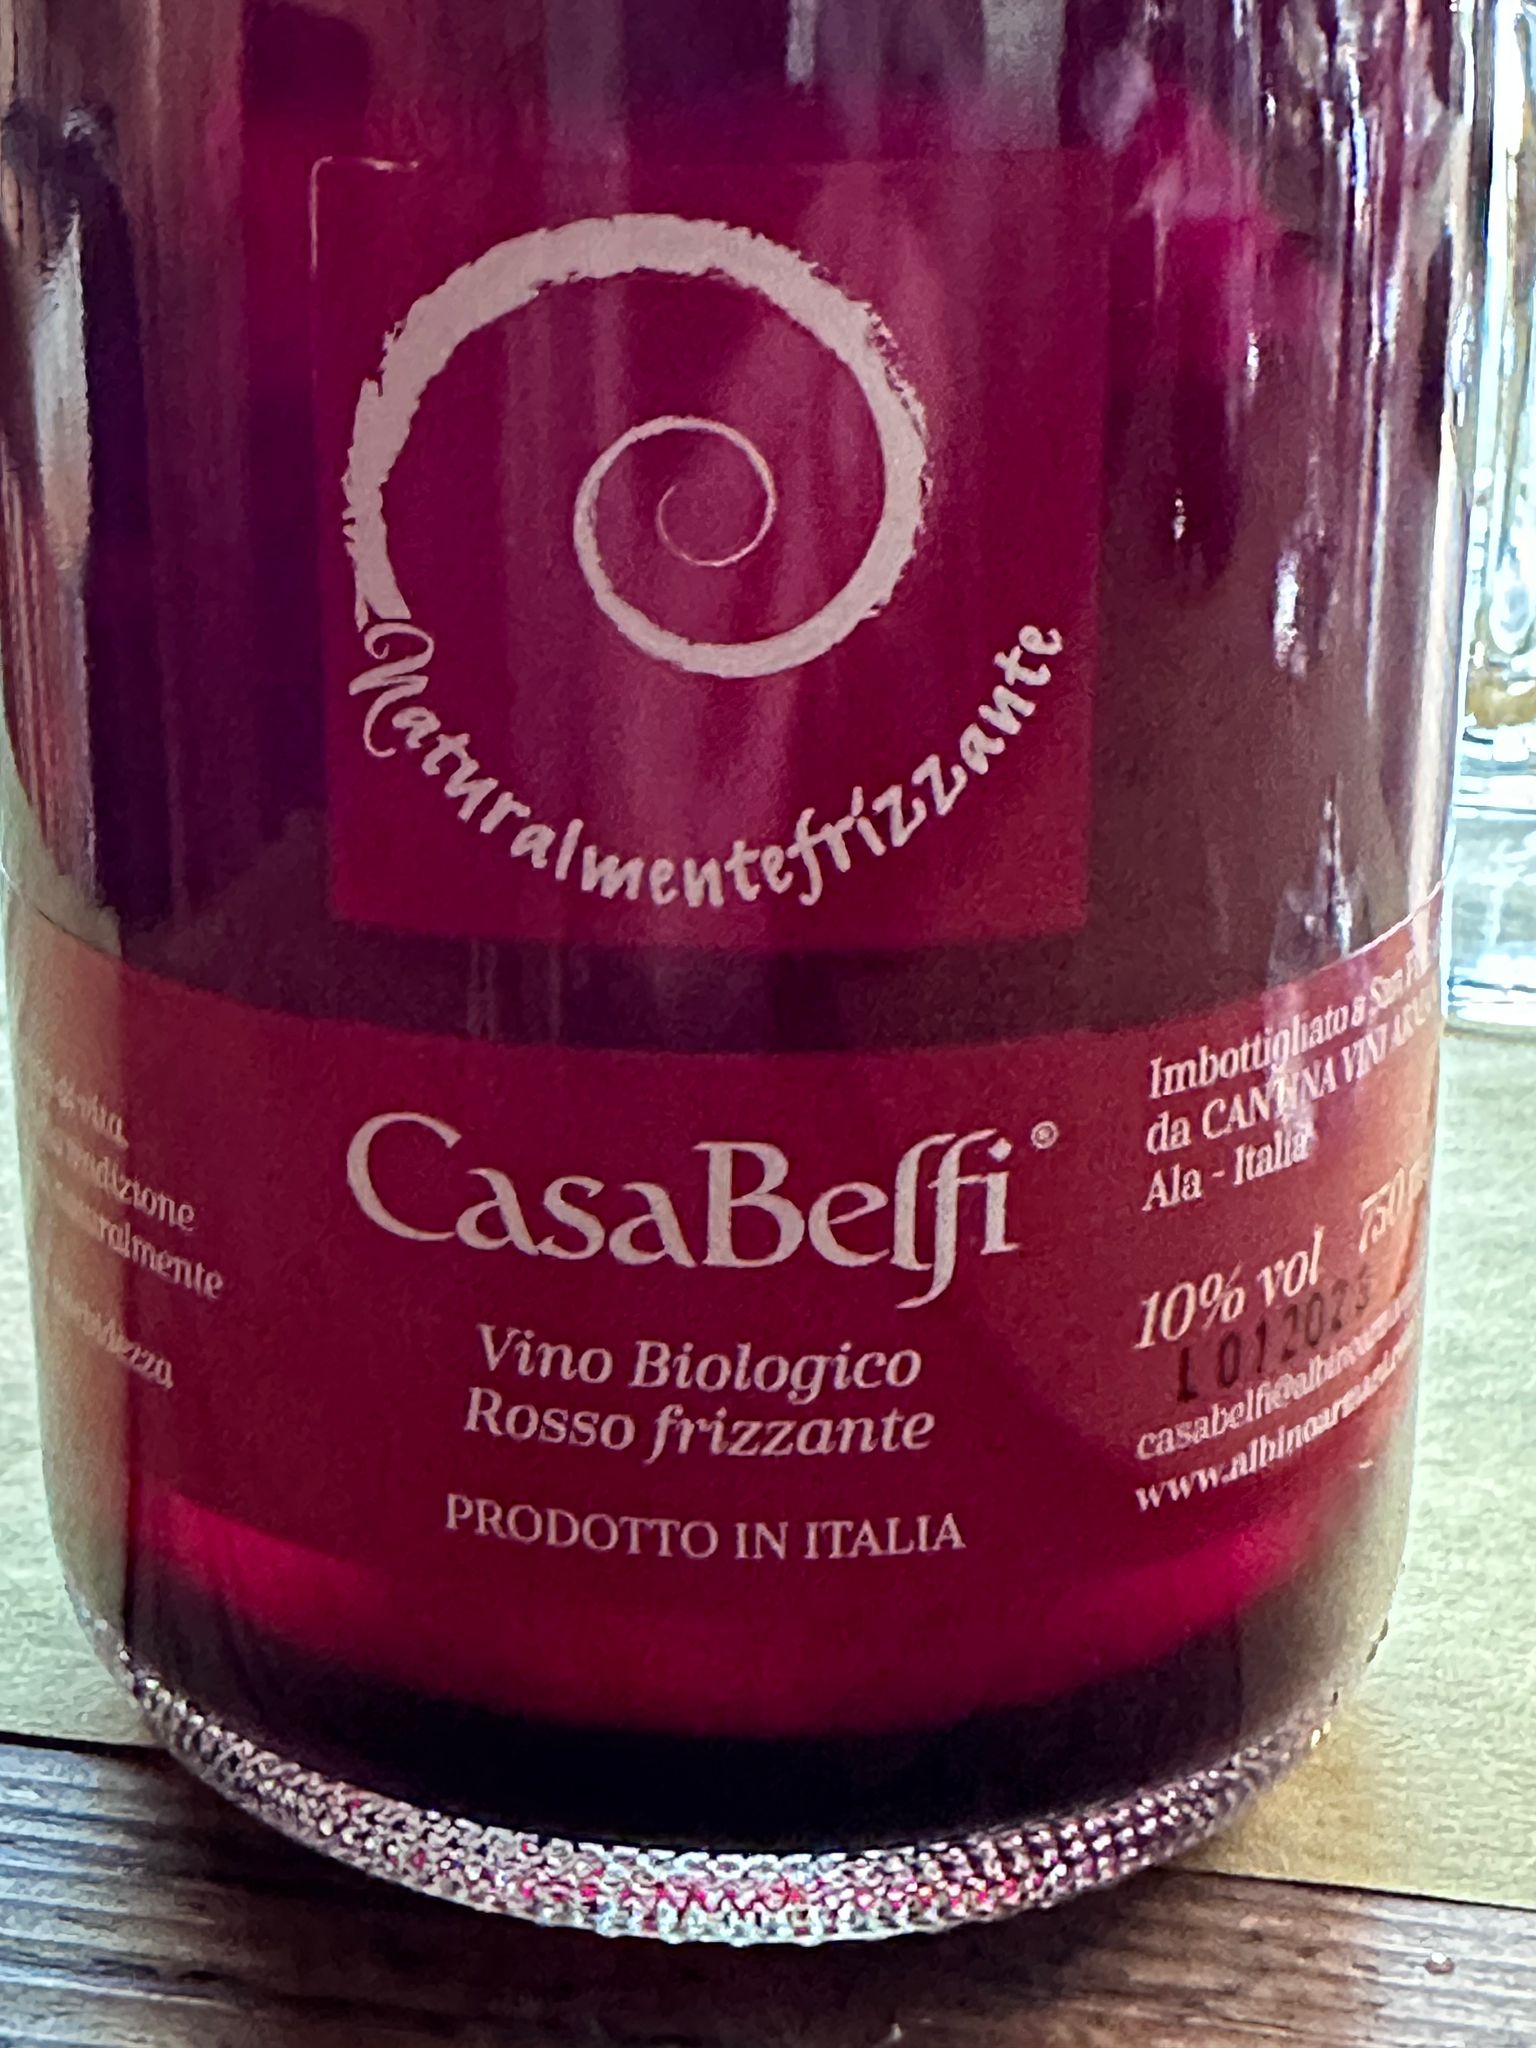 Casera Frontin a Beux 2023 per la promozione del territorio, un vino di Casa Belfi